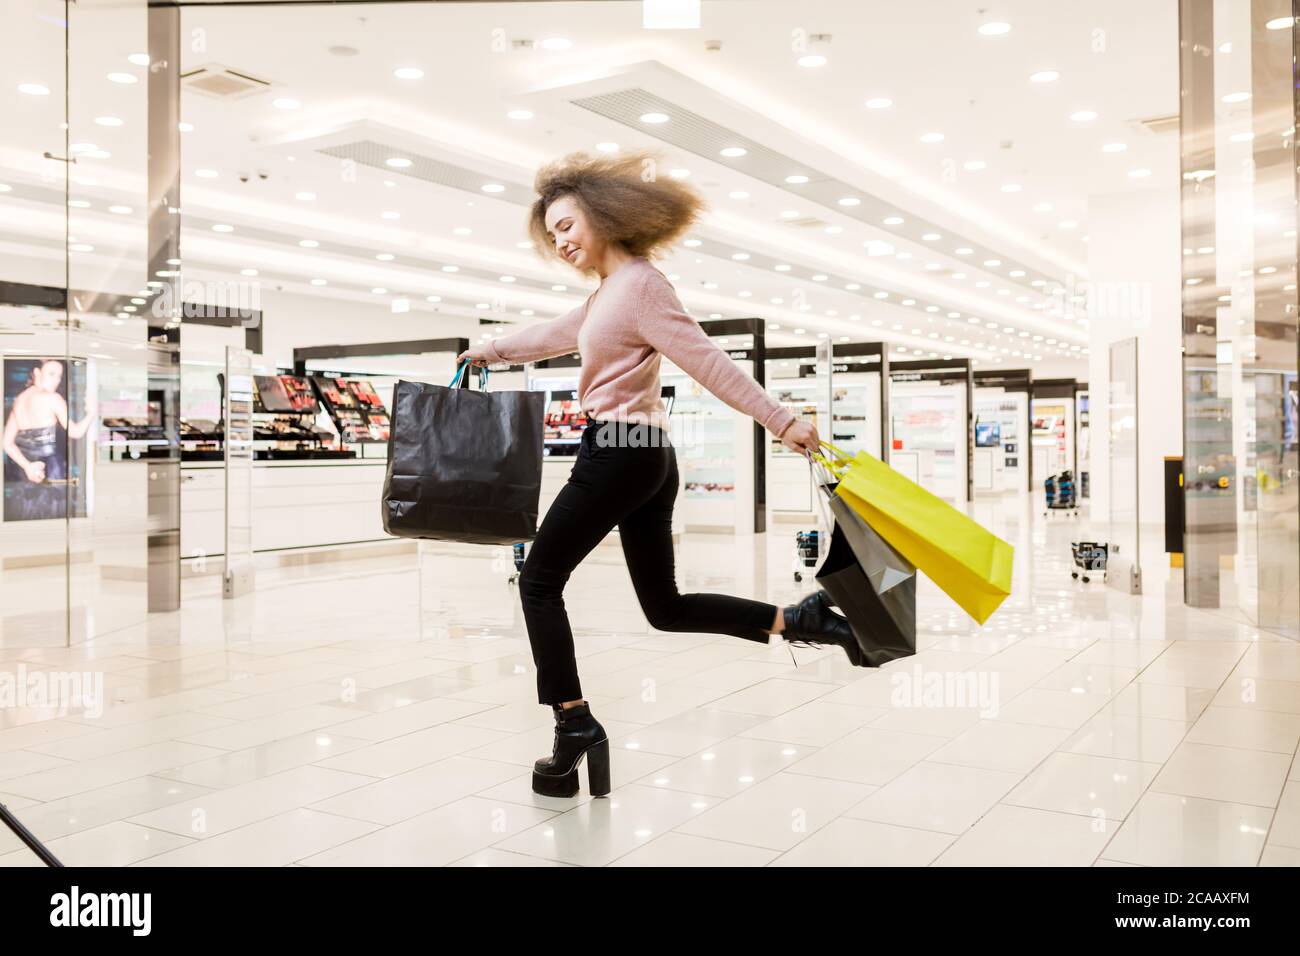 Aufgeregt junge weibliche Shopoholic läuft auf High Heels entlang der spacigen Einkaufszentrum, Rabatt Zeit beginnt. Stockfoto